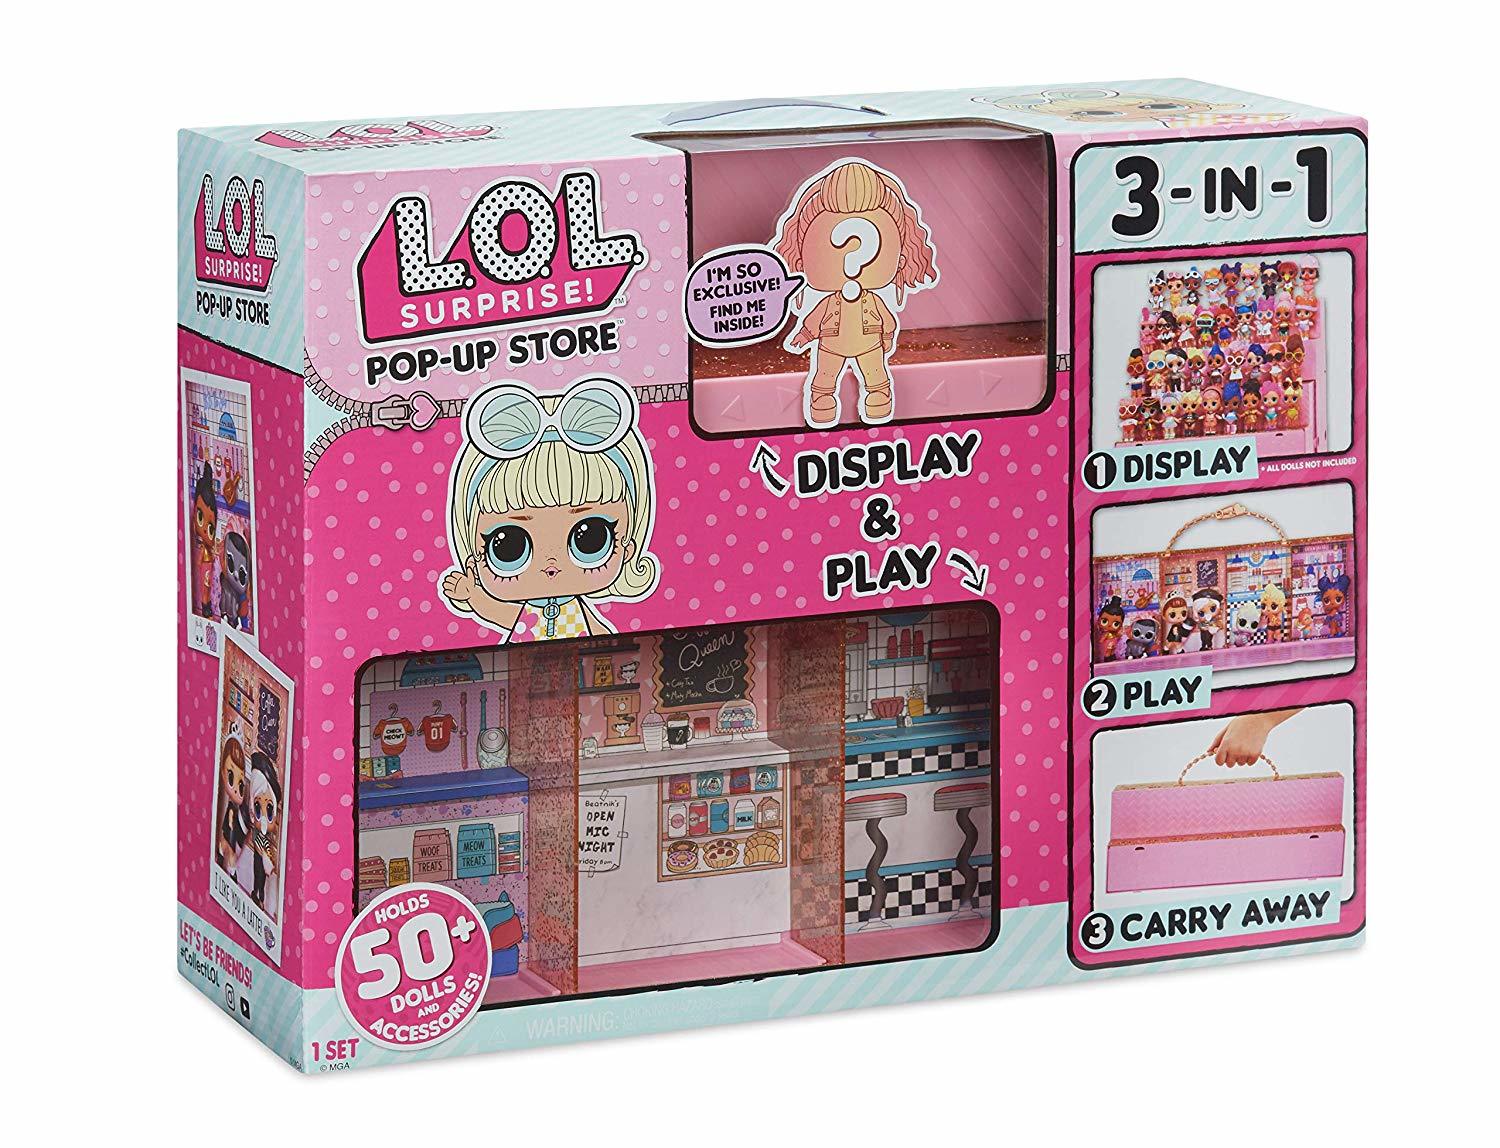 фото Игровой набор с куклой lol surprise магазин поп-ап 552314